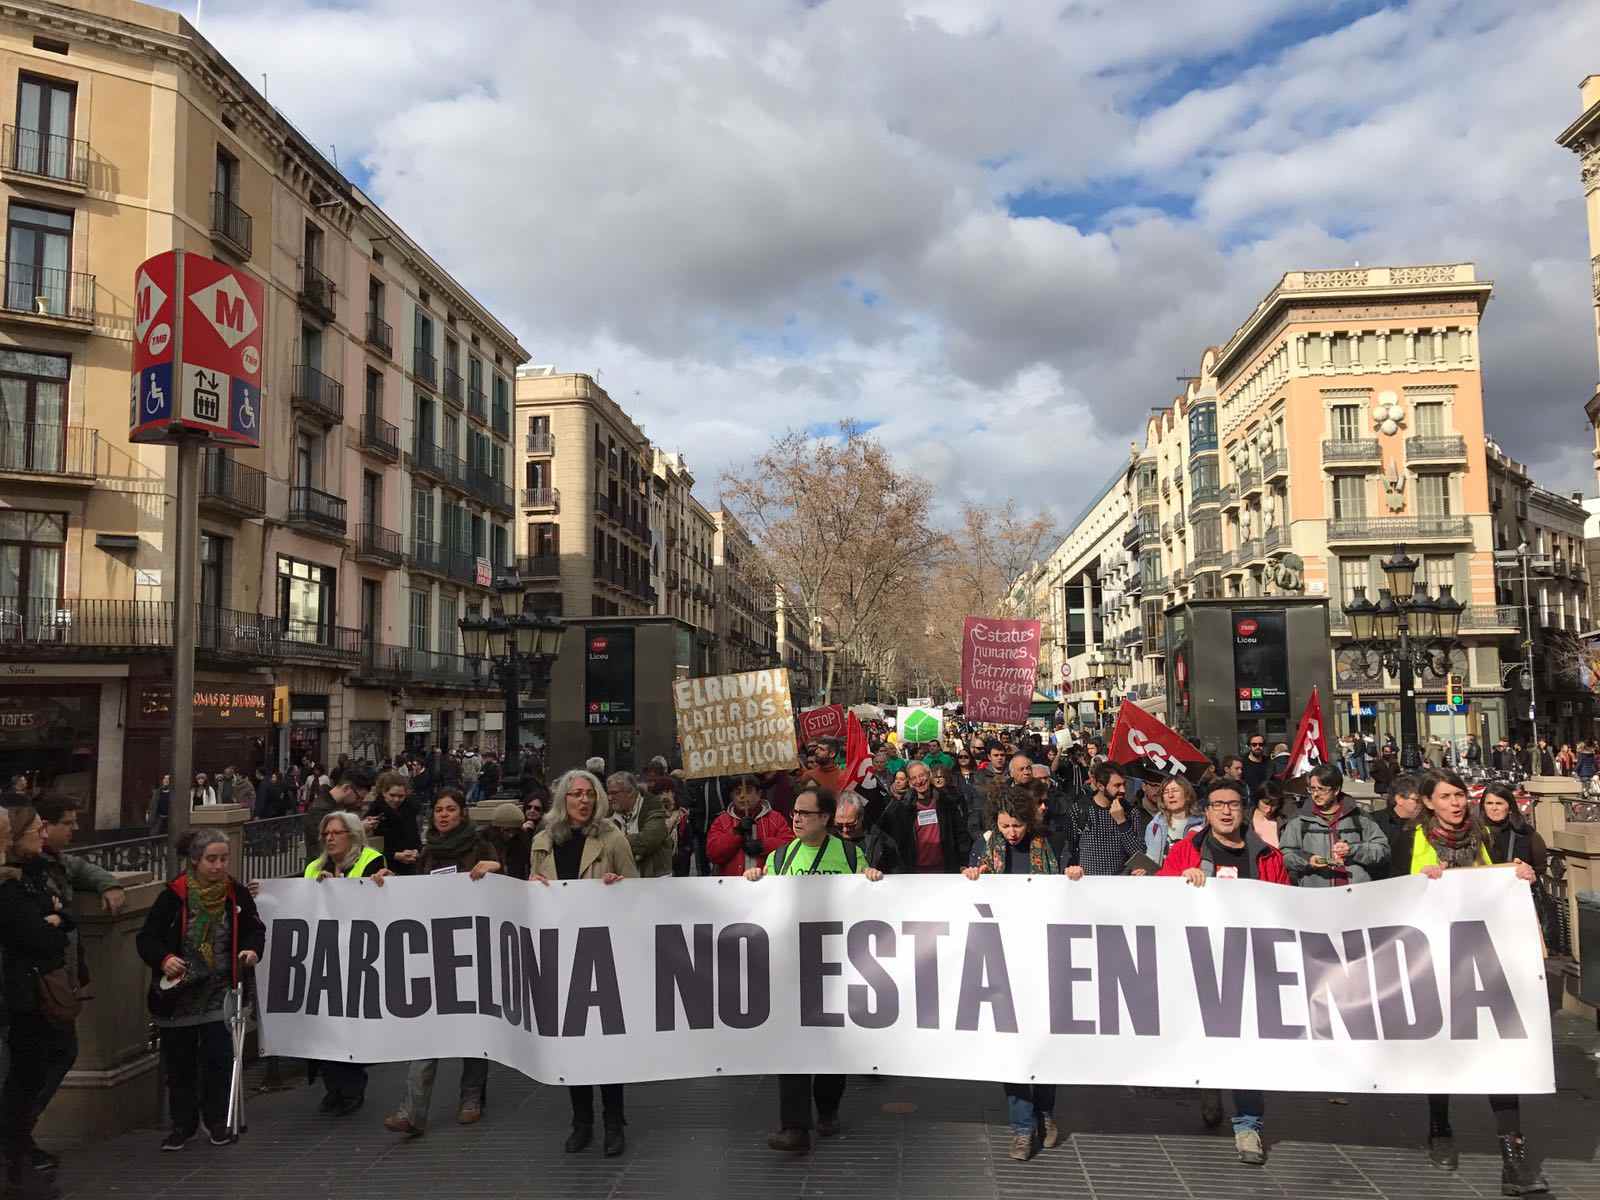 "Barcelona no està en venda": manifestación en la Rambla contra el turismo